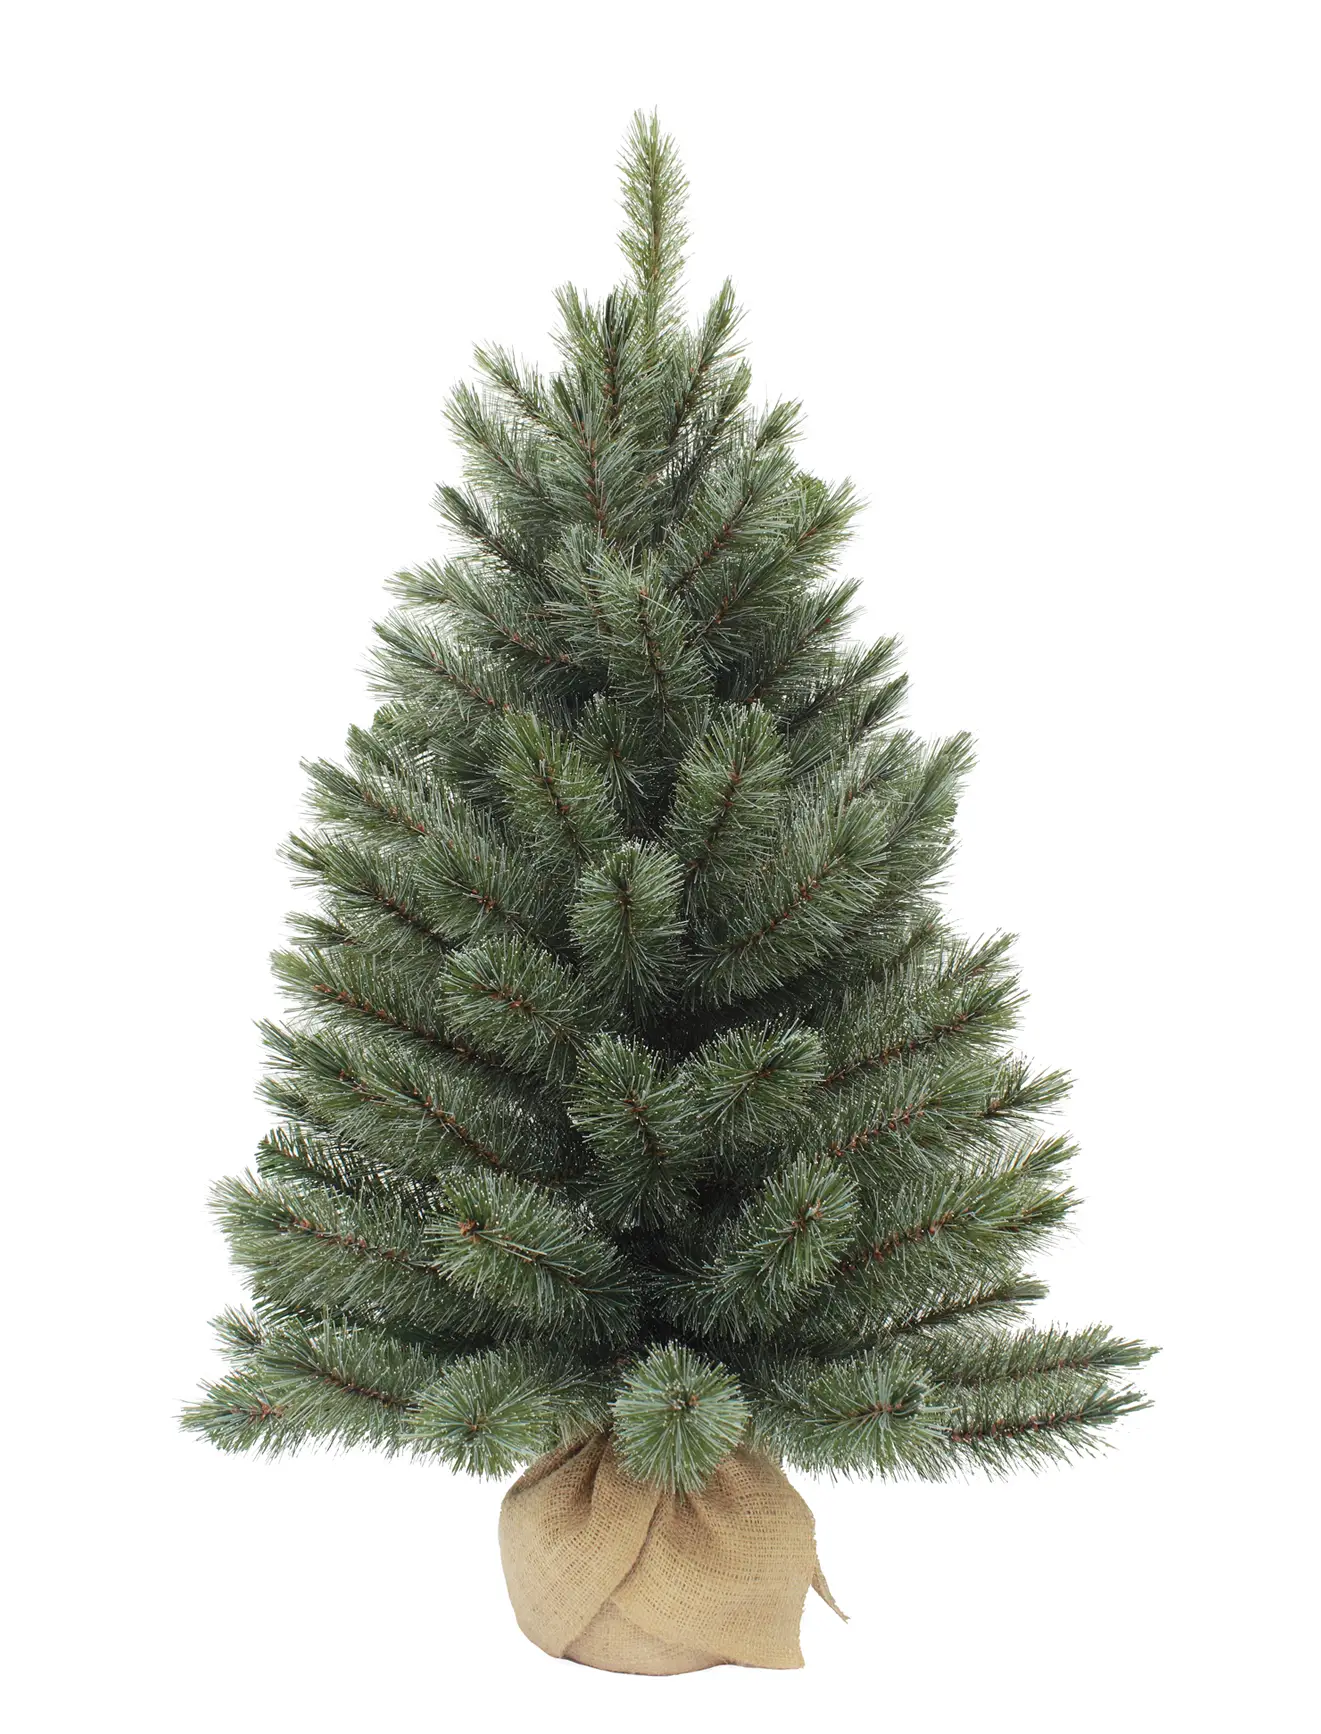 Forest Weihnachtsbaum K眉nstlicher